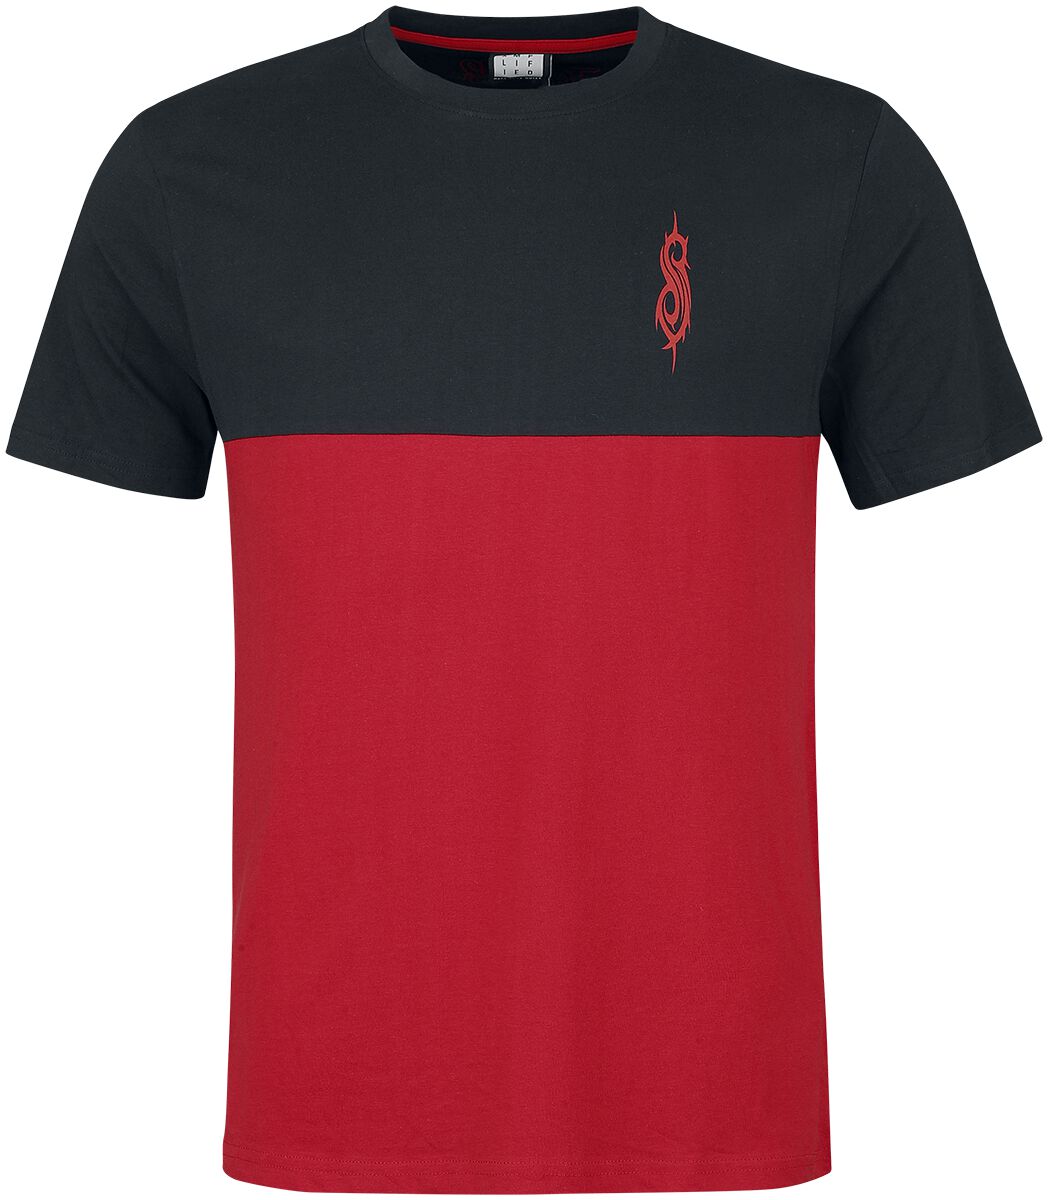 T-Shirt Manches courtes de Slipknot - Amplified Collection - Logos - S à XXL - pour Homme - noir/rou